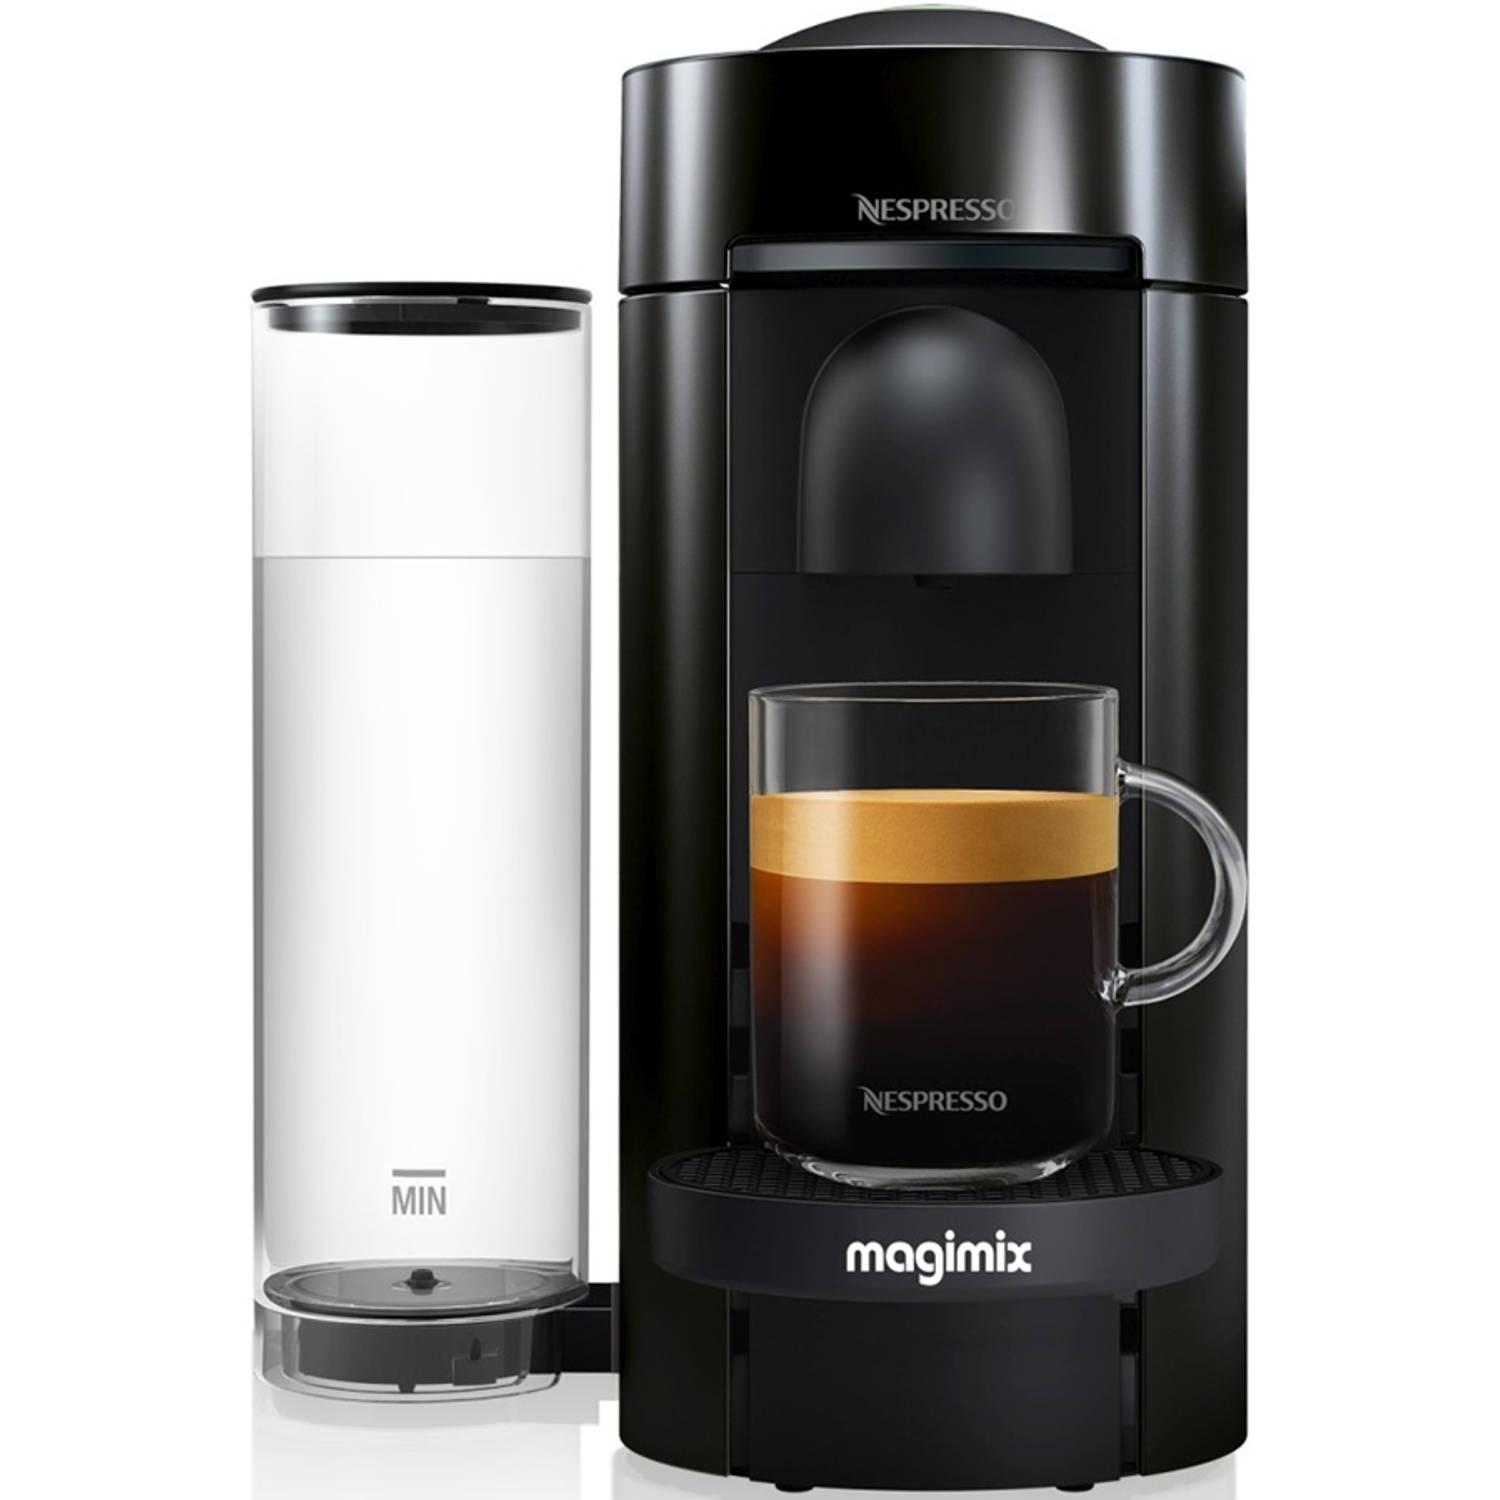 Nebu Eenheid Ontvanger Magimix Vertuo Plus 11399 NL Nespresso apparaat | Blokker